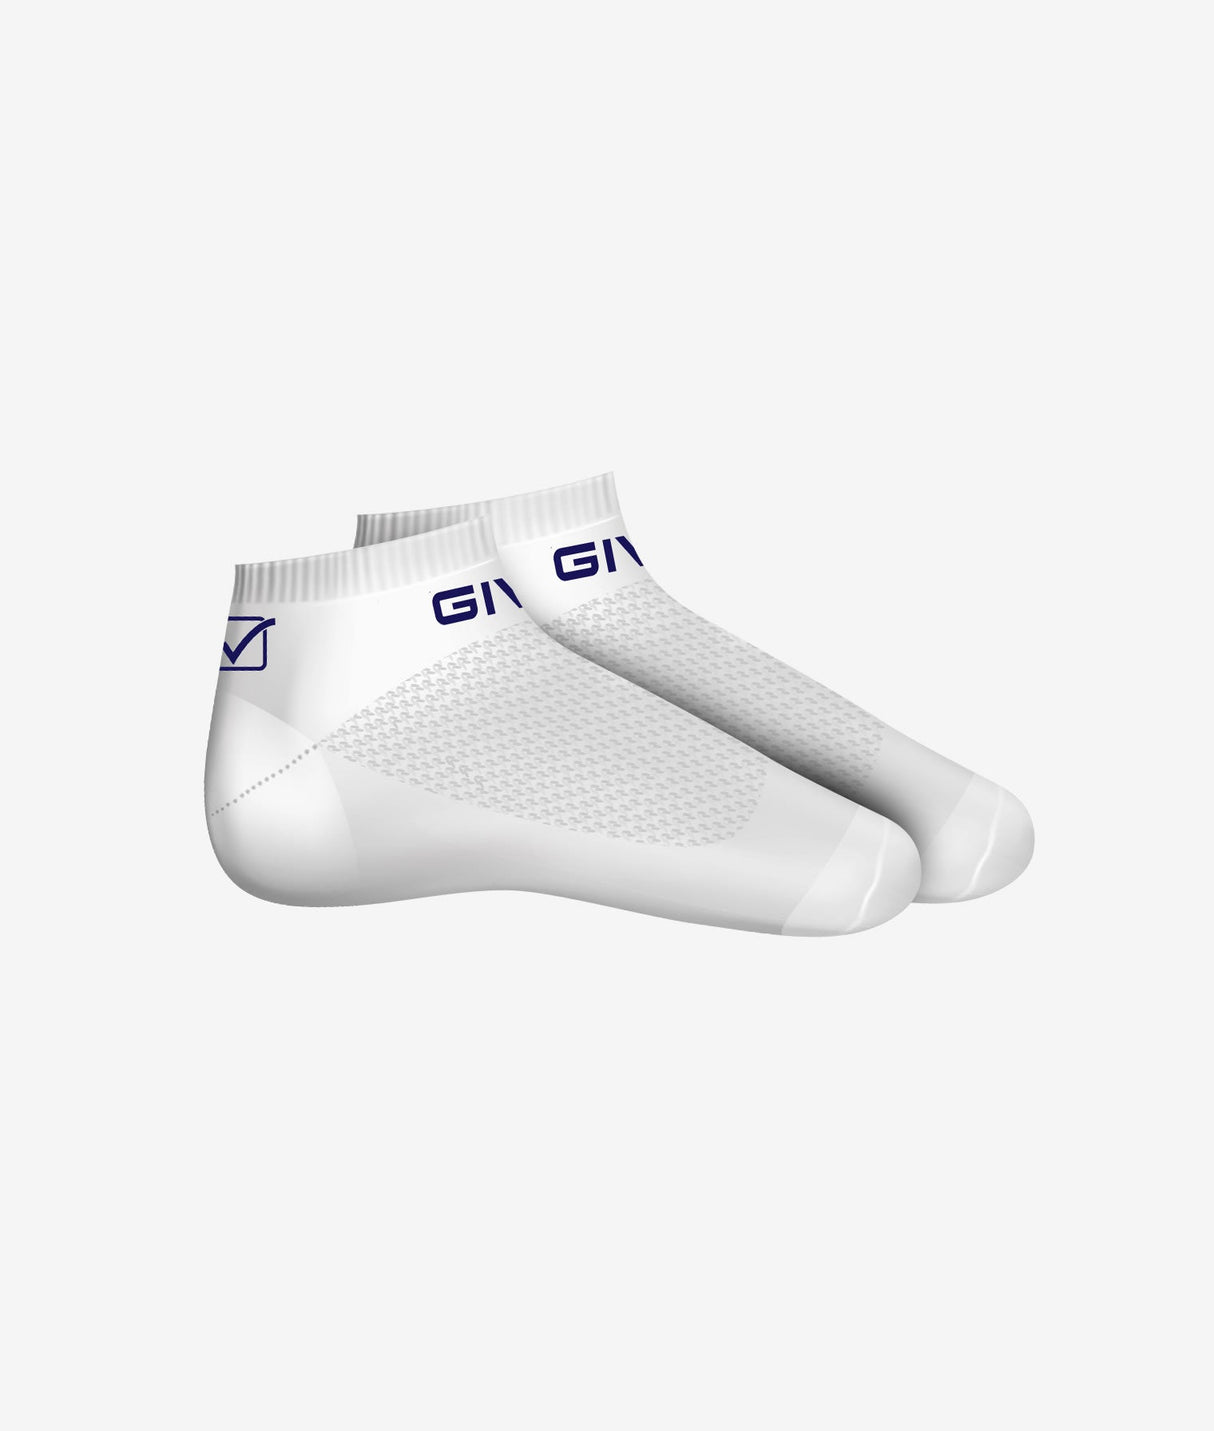 Givova TRIS Socken - weiß, C032-0310